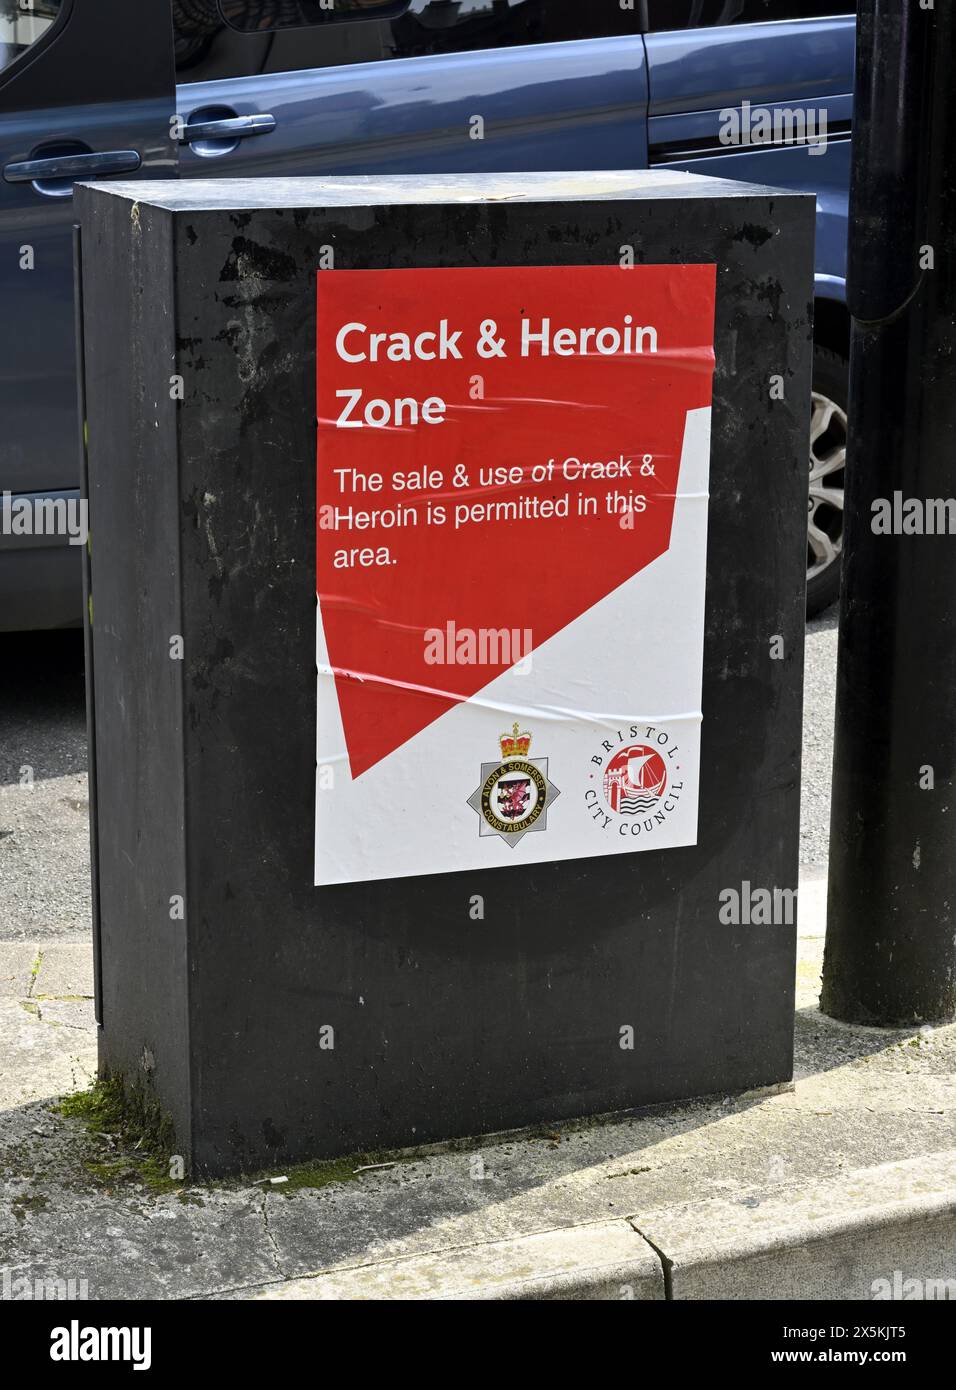 Affiche fausse, bidon, mais réaliste de la zone de drogue dans le centre de Bristol, Royaume-Uni. Affiche de la zone du crack et de l'héroïne Banque D'Images